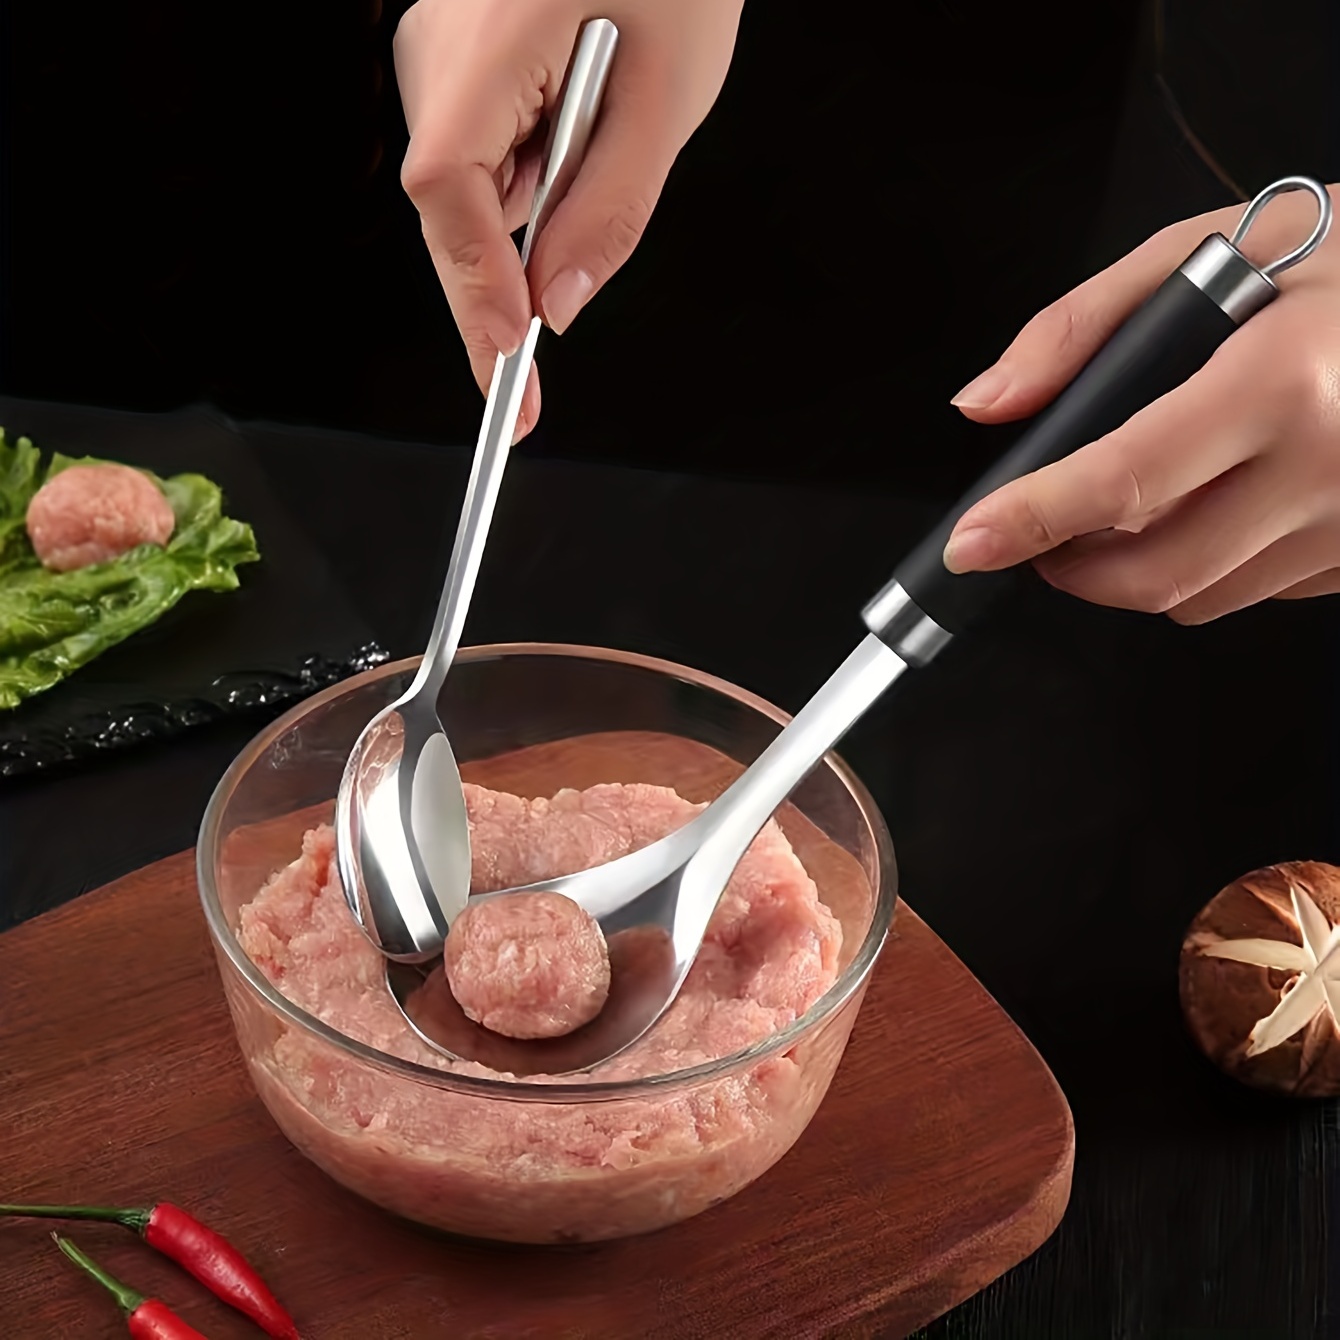 Stainless Steel Meatball Making Tool Meat Scoop Fish Spoon - Temu